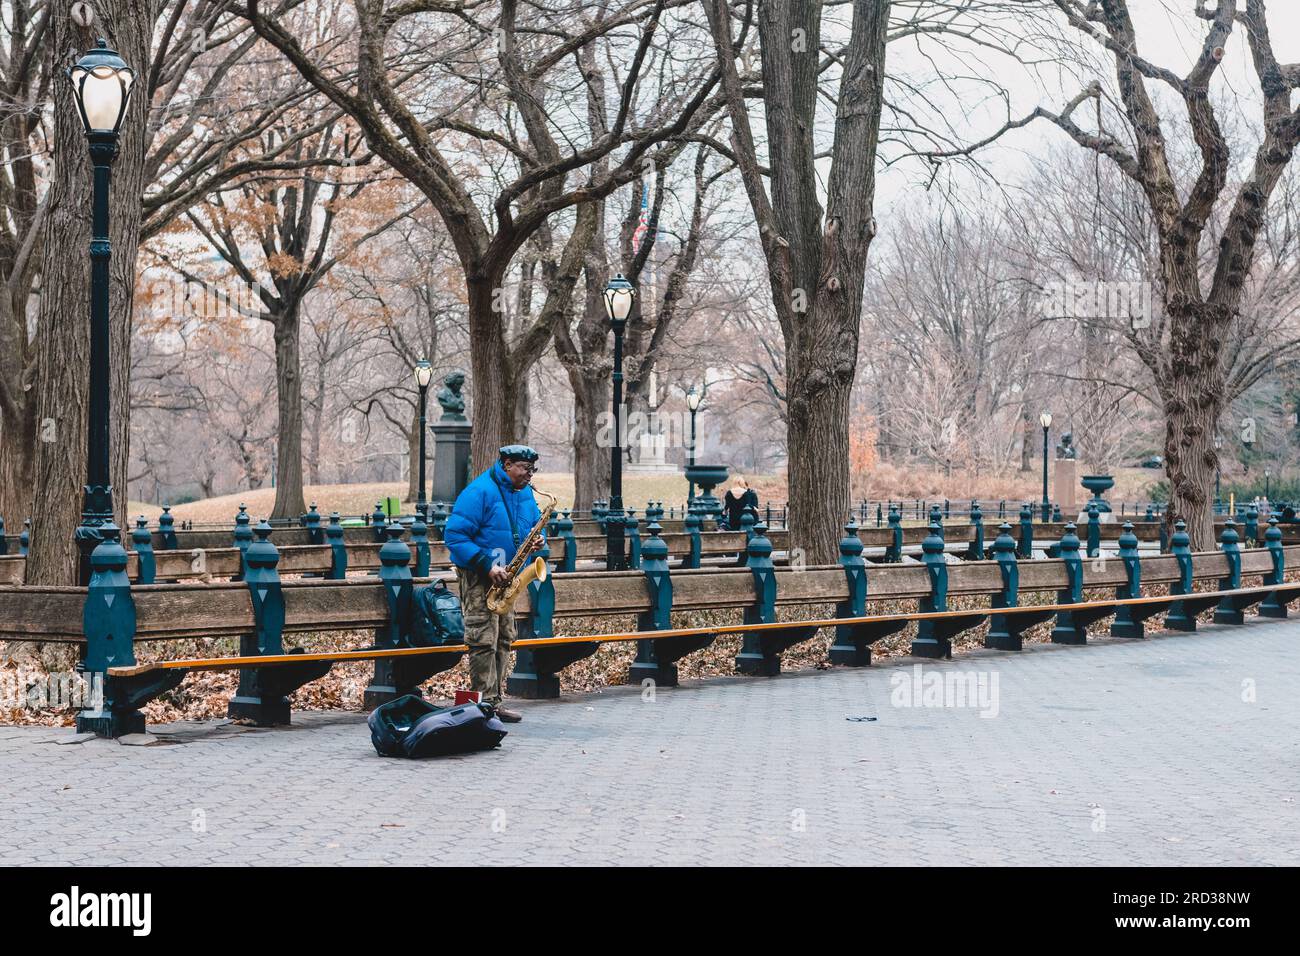 Busker jouant du saxophone tandis que d'autres passants passent autour de lui, Central Park, New York Banque D'Images